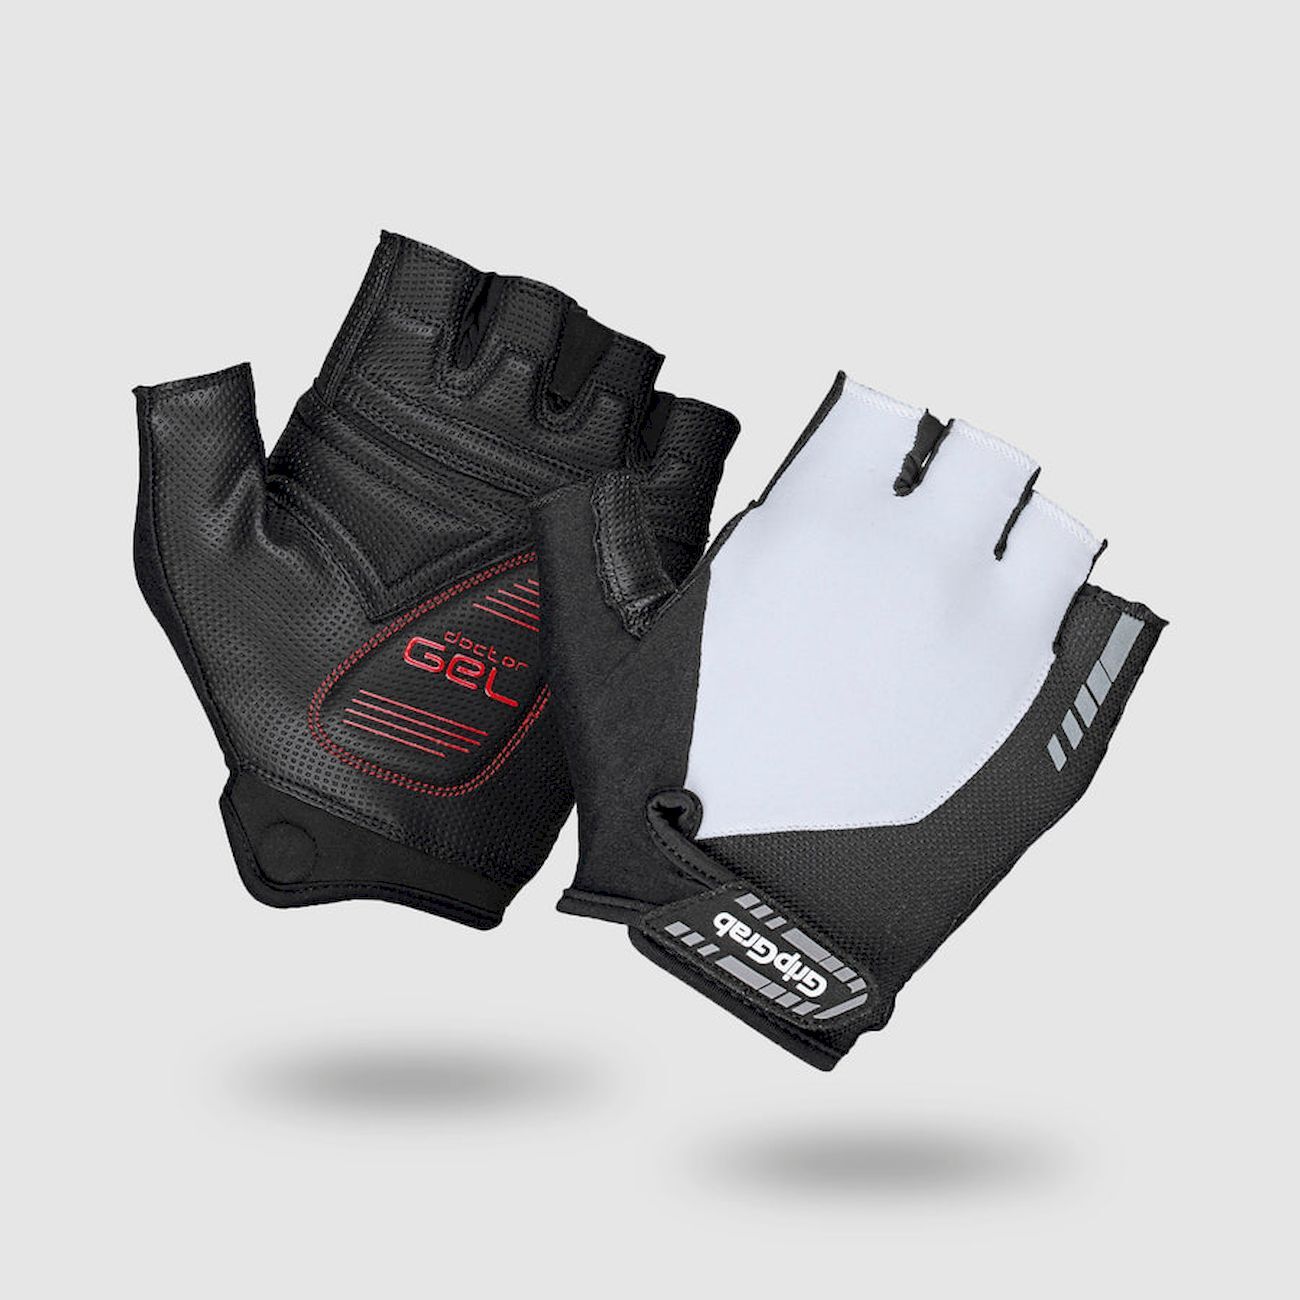 Grip Grab ProGel Padded Gloves - Short finger gloves - Men's